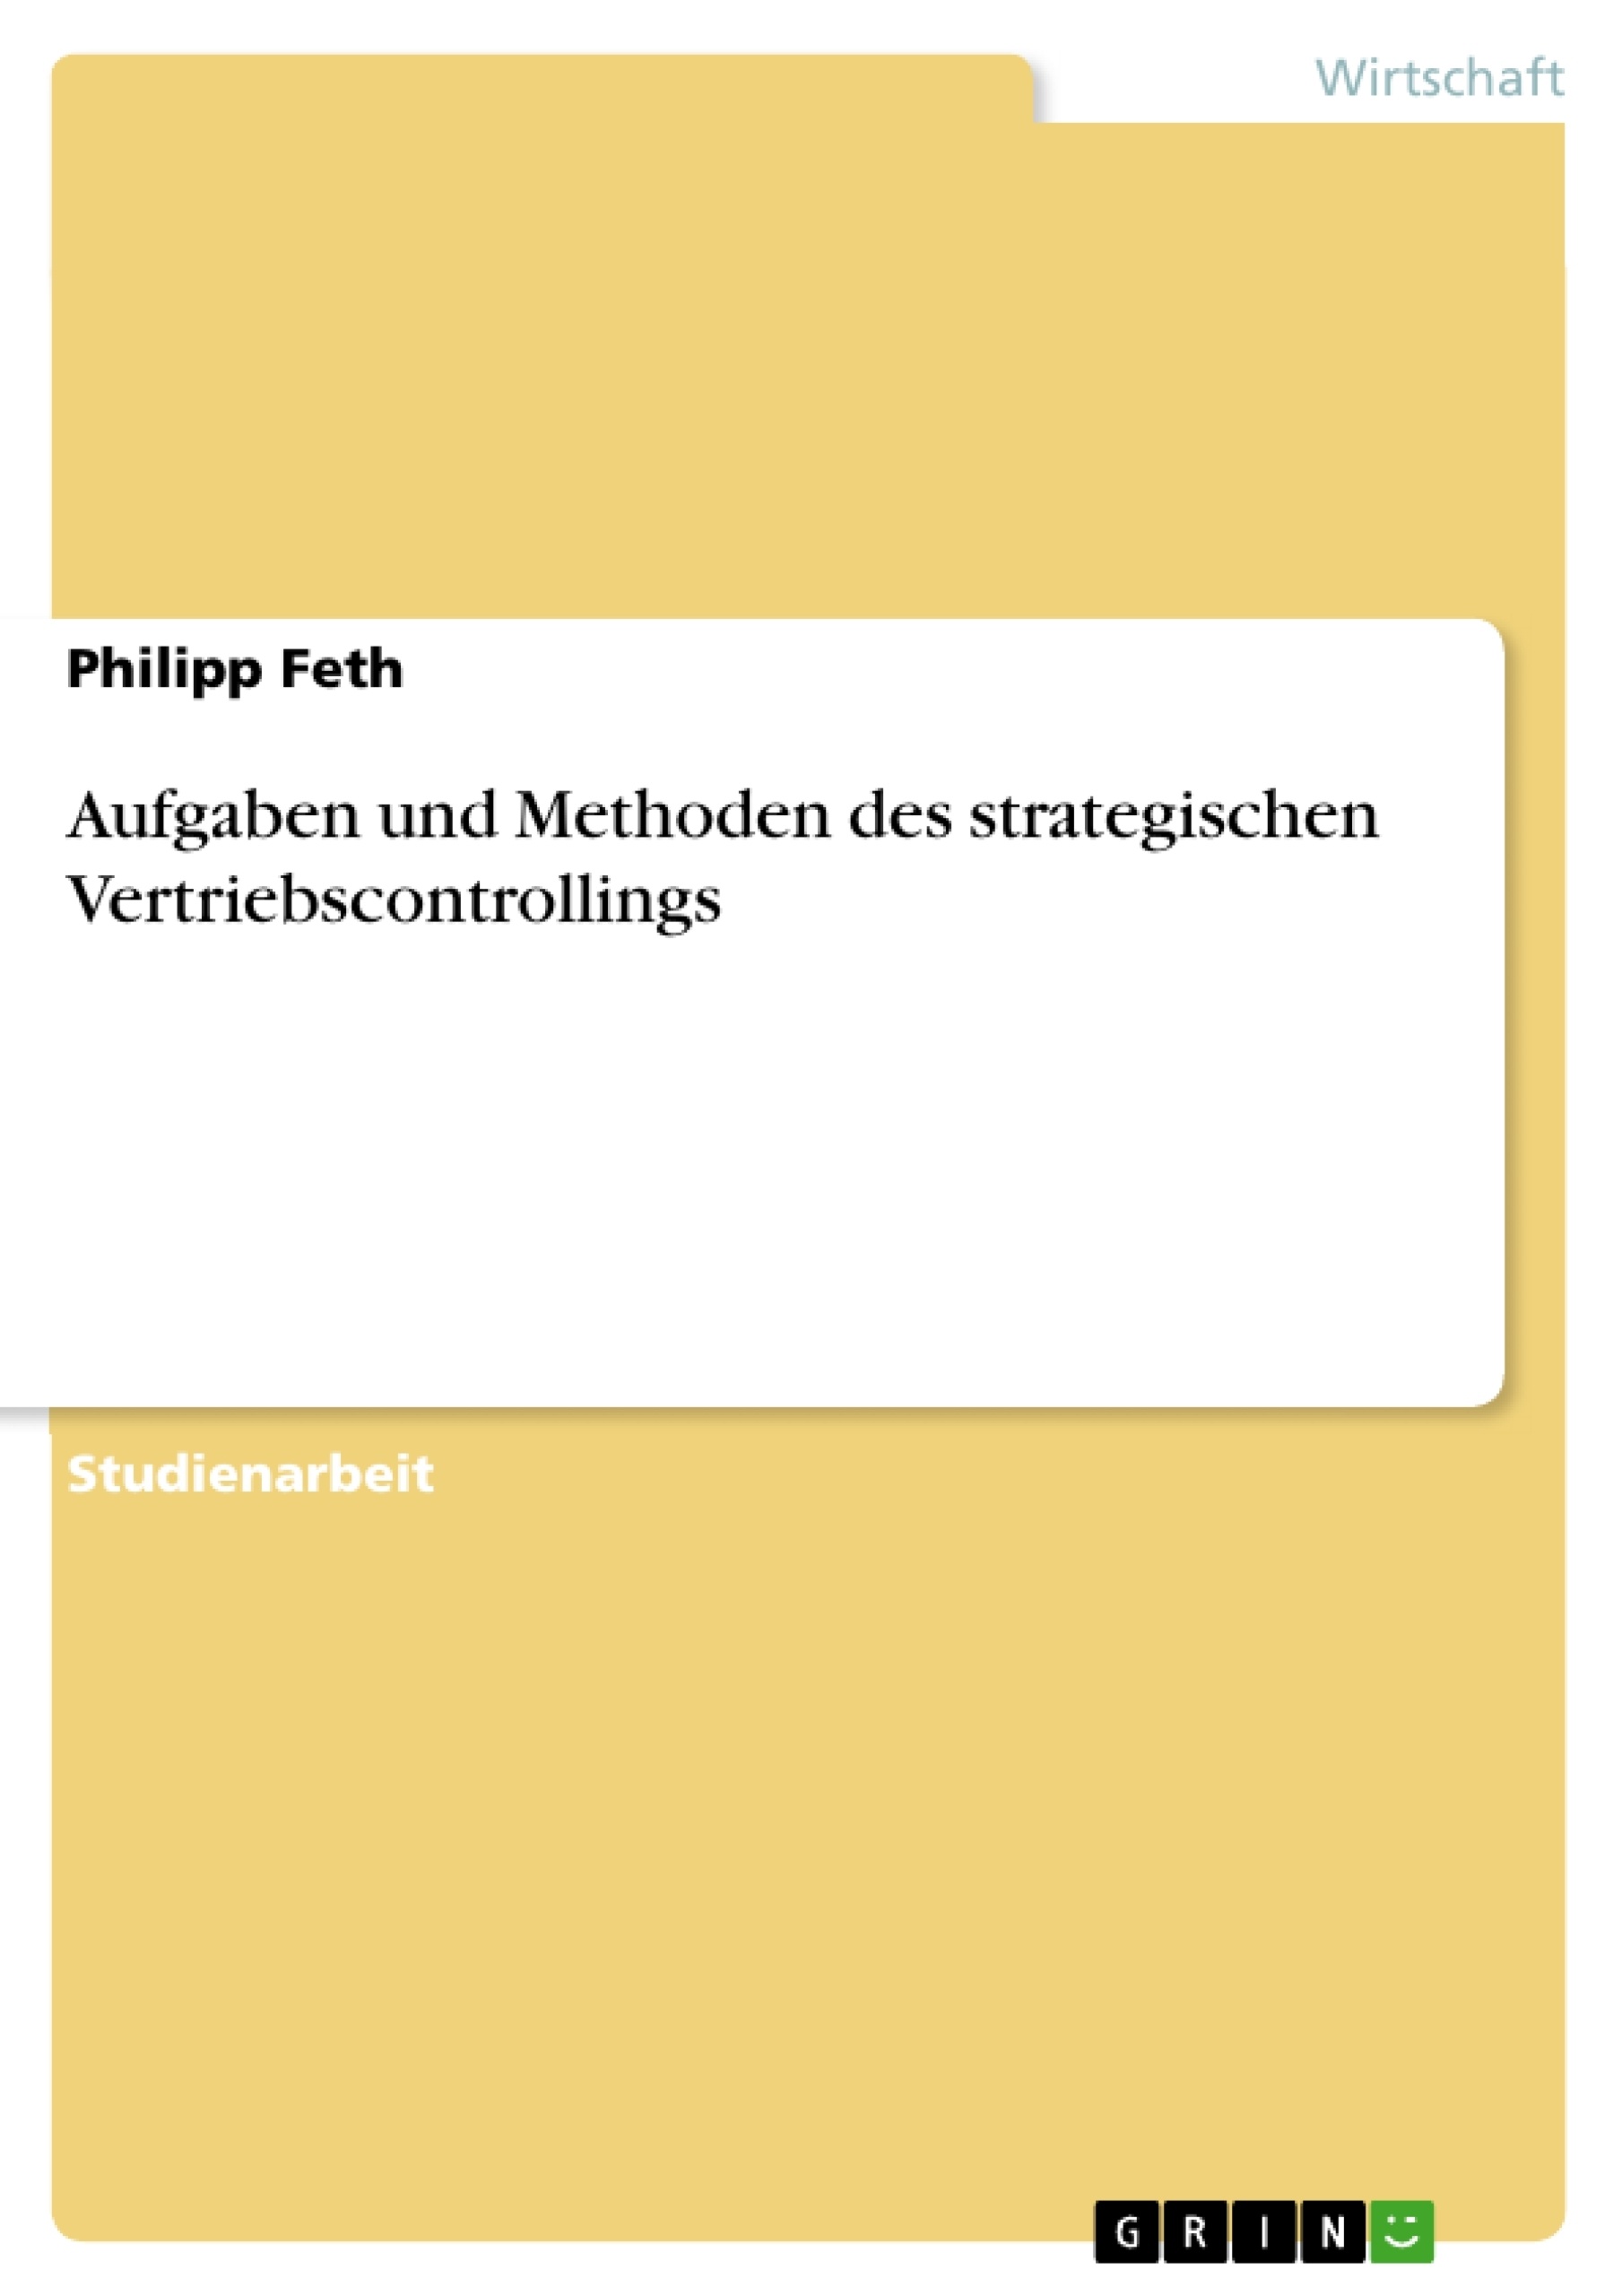 Title: Aufgaben und Methoden des strategischen Vertriebscontrollings